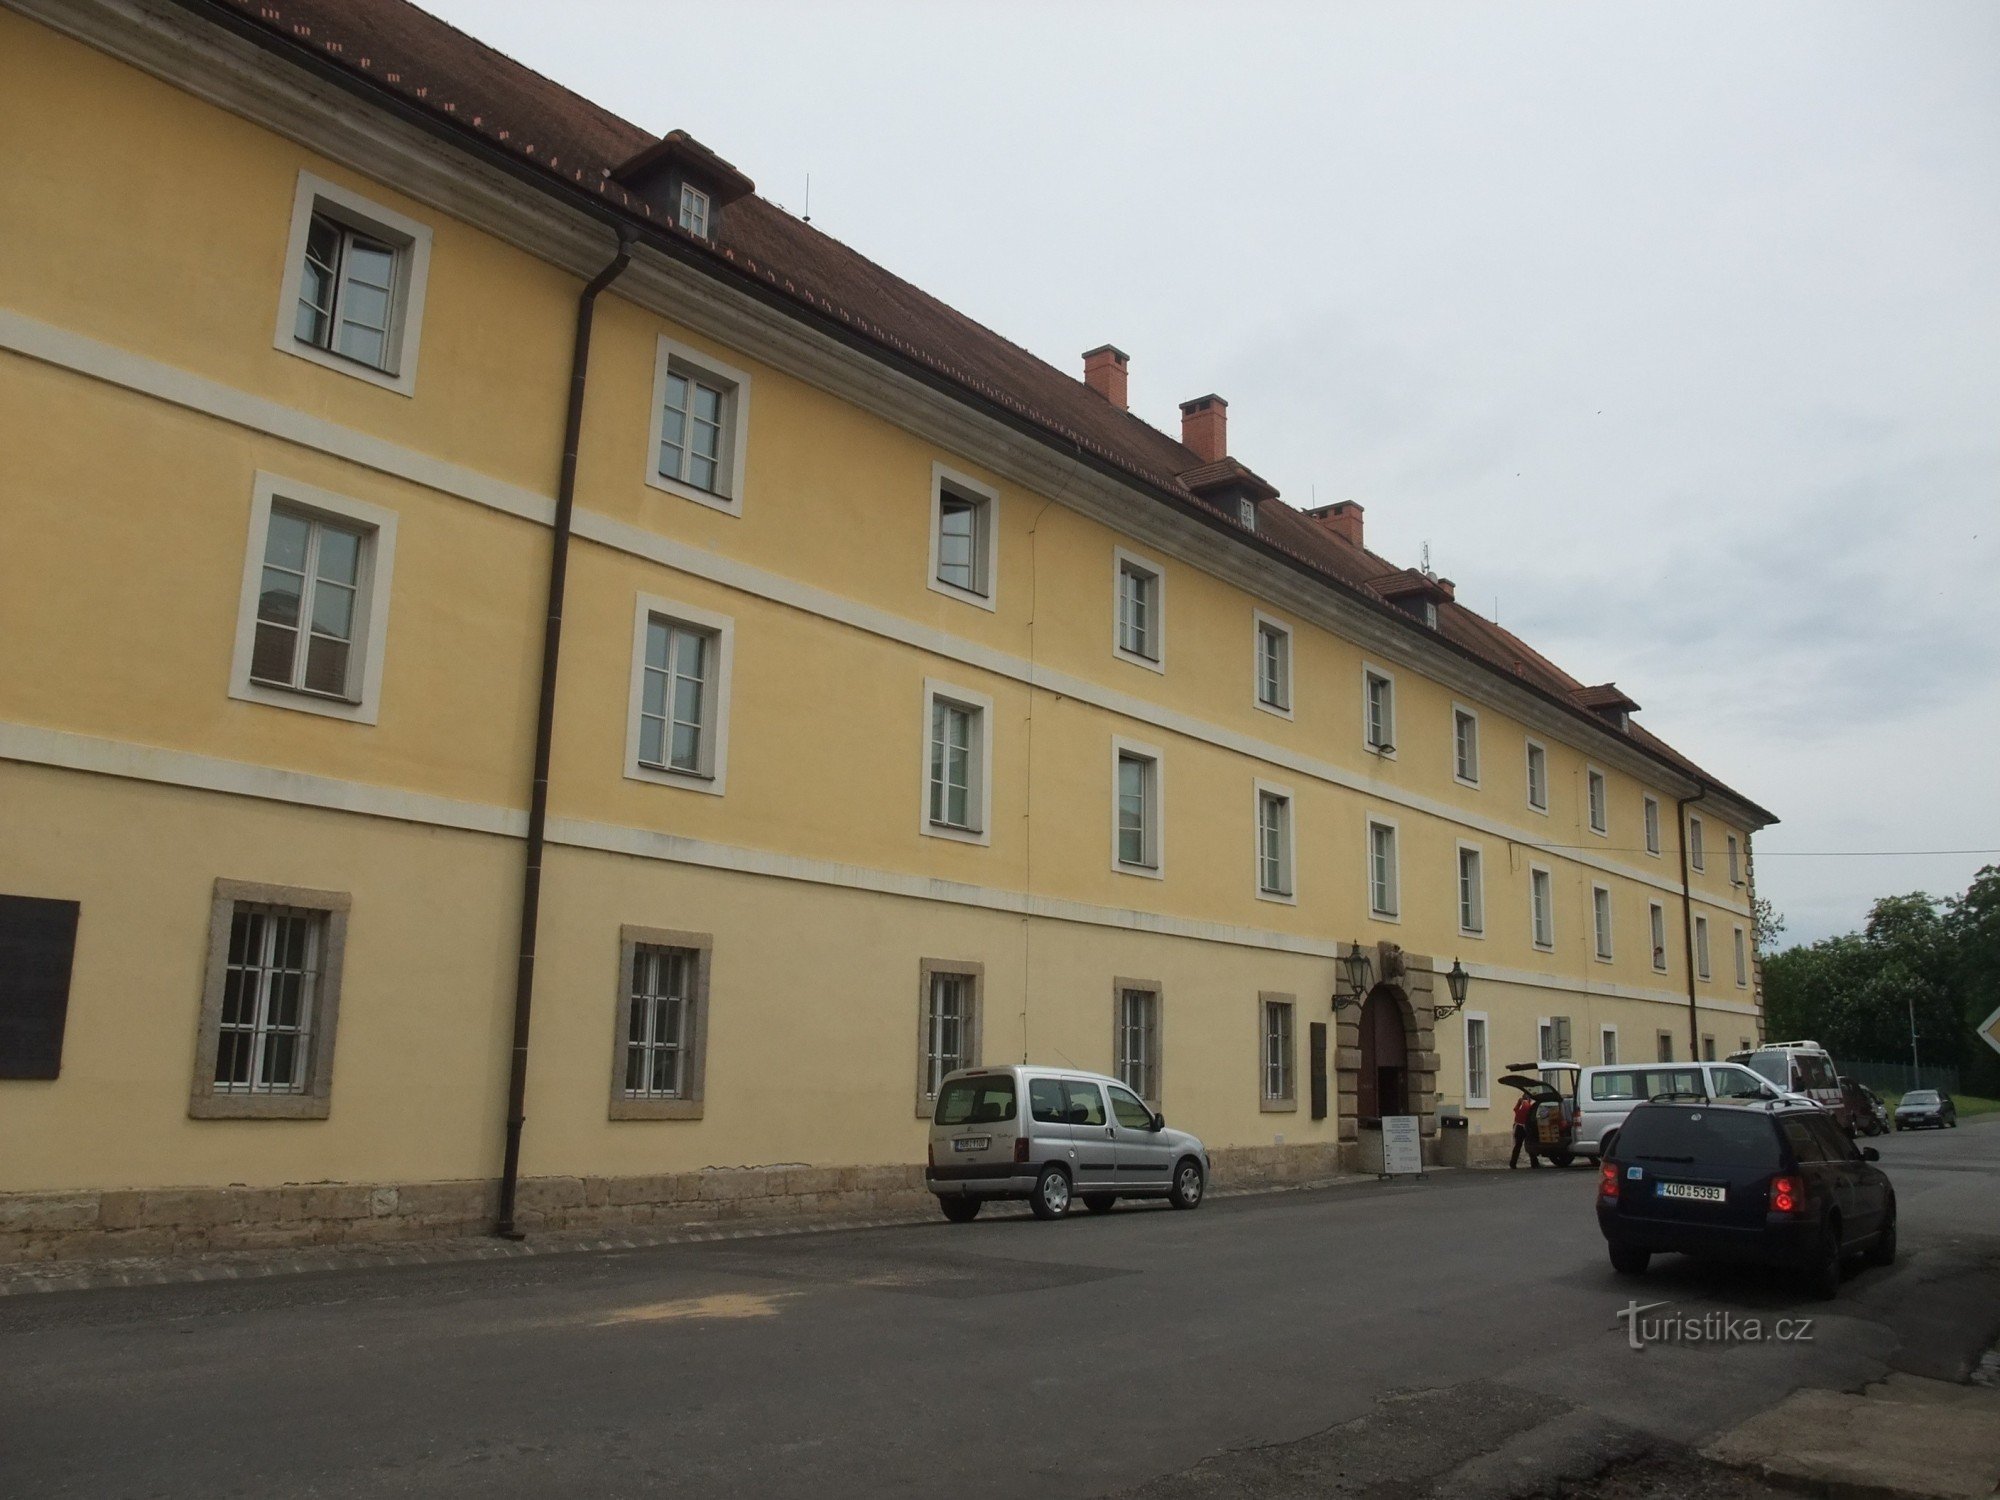 Vie culturelle dans le ghetto de Terezin - Caserne de Magdebourg